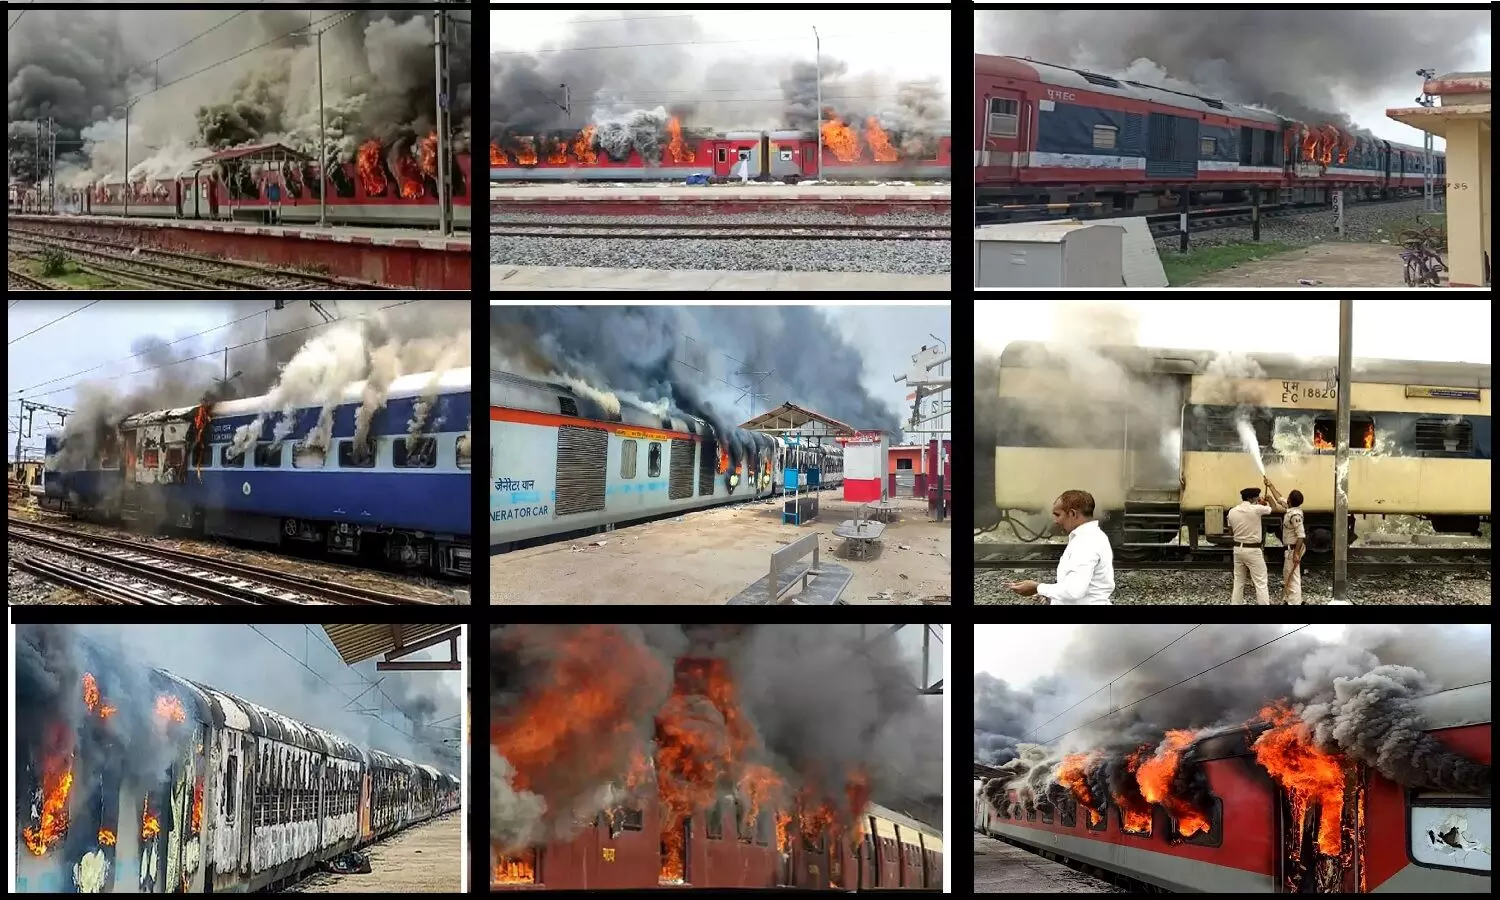 अग्निपथ योजना के विरोध में उपद्रवियों ने 11 ट्रेनों को जला डाला, एक ट्रेन की कीमत जानकर आपके होश उड़ जाएंगे